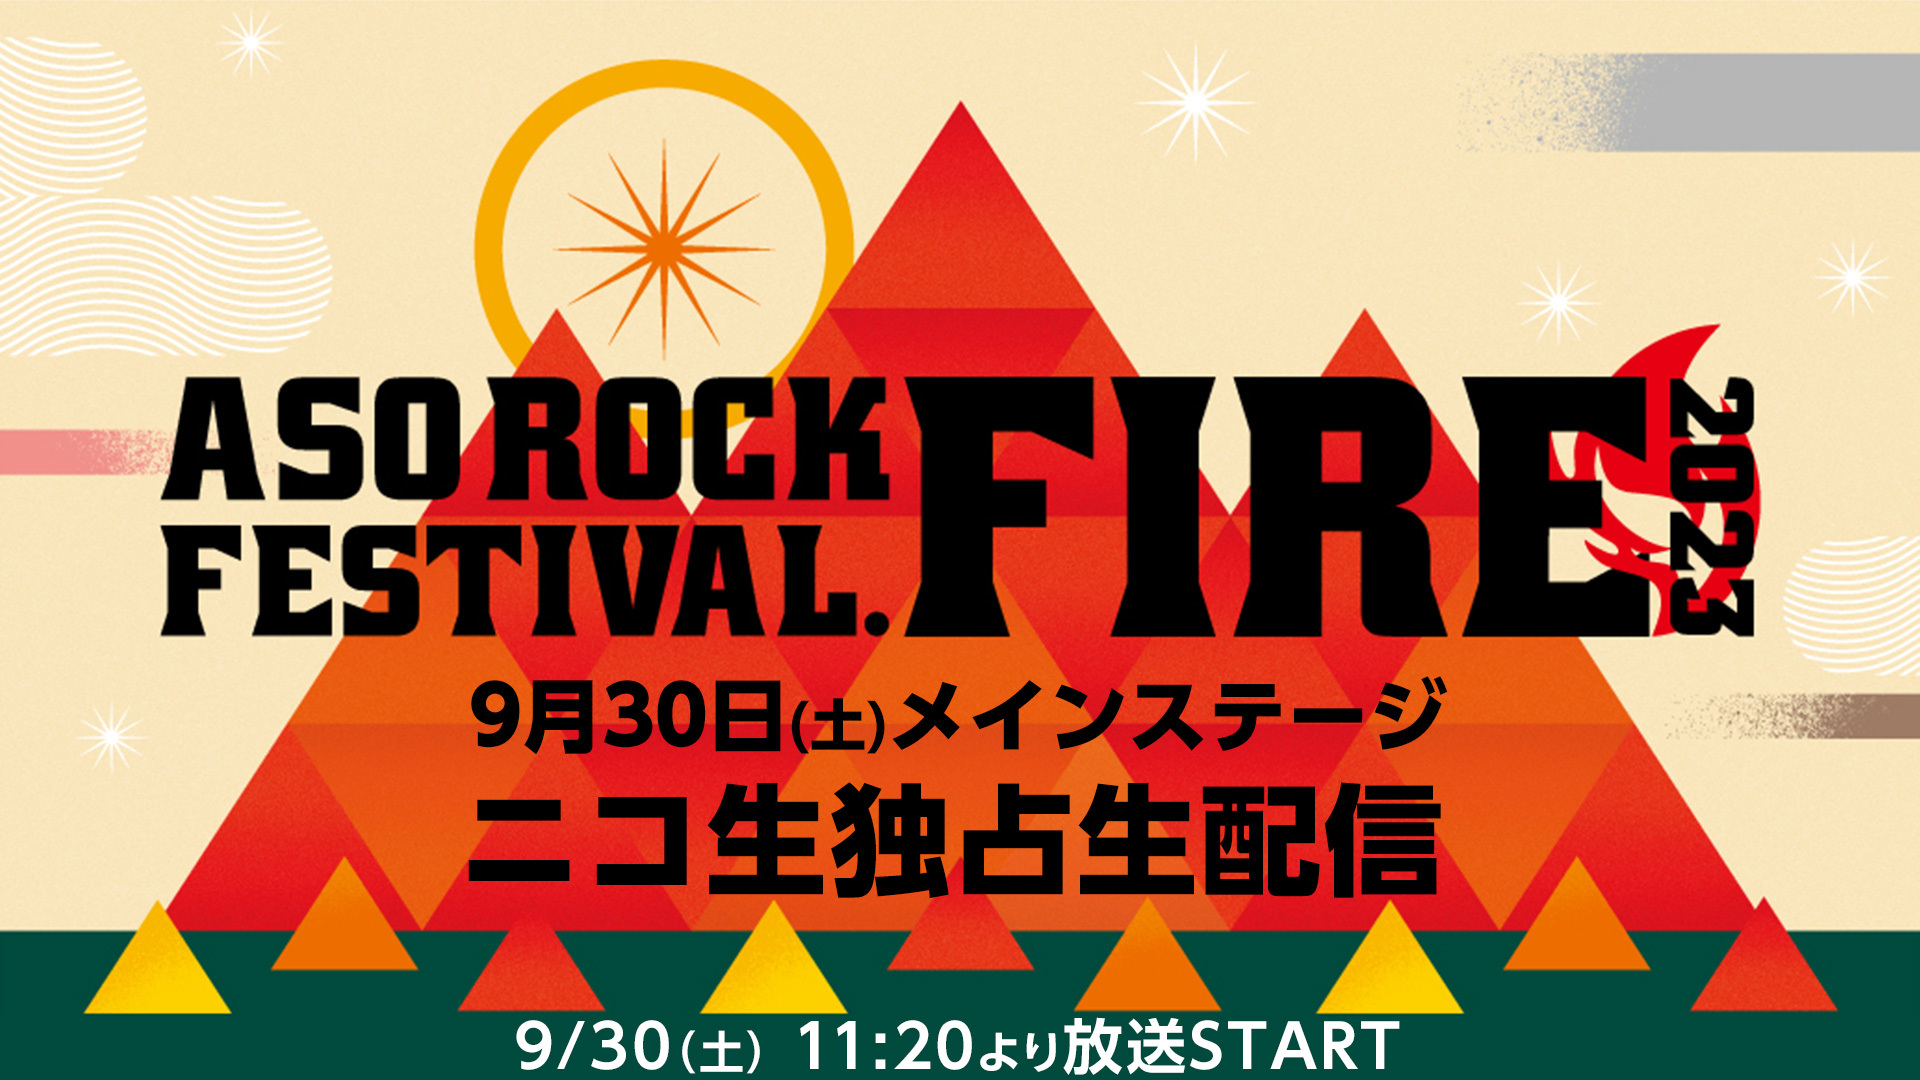 ASO ROCK FESTIVAL FIRE 2023【9月30日(土)メインステージニコ生独占生配信】